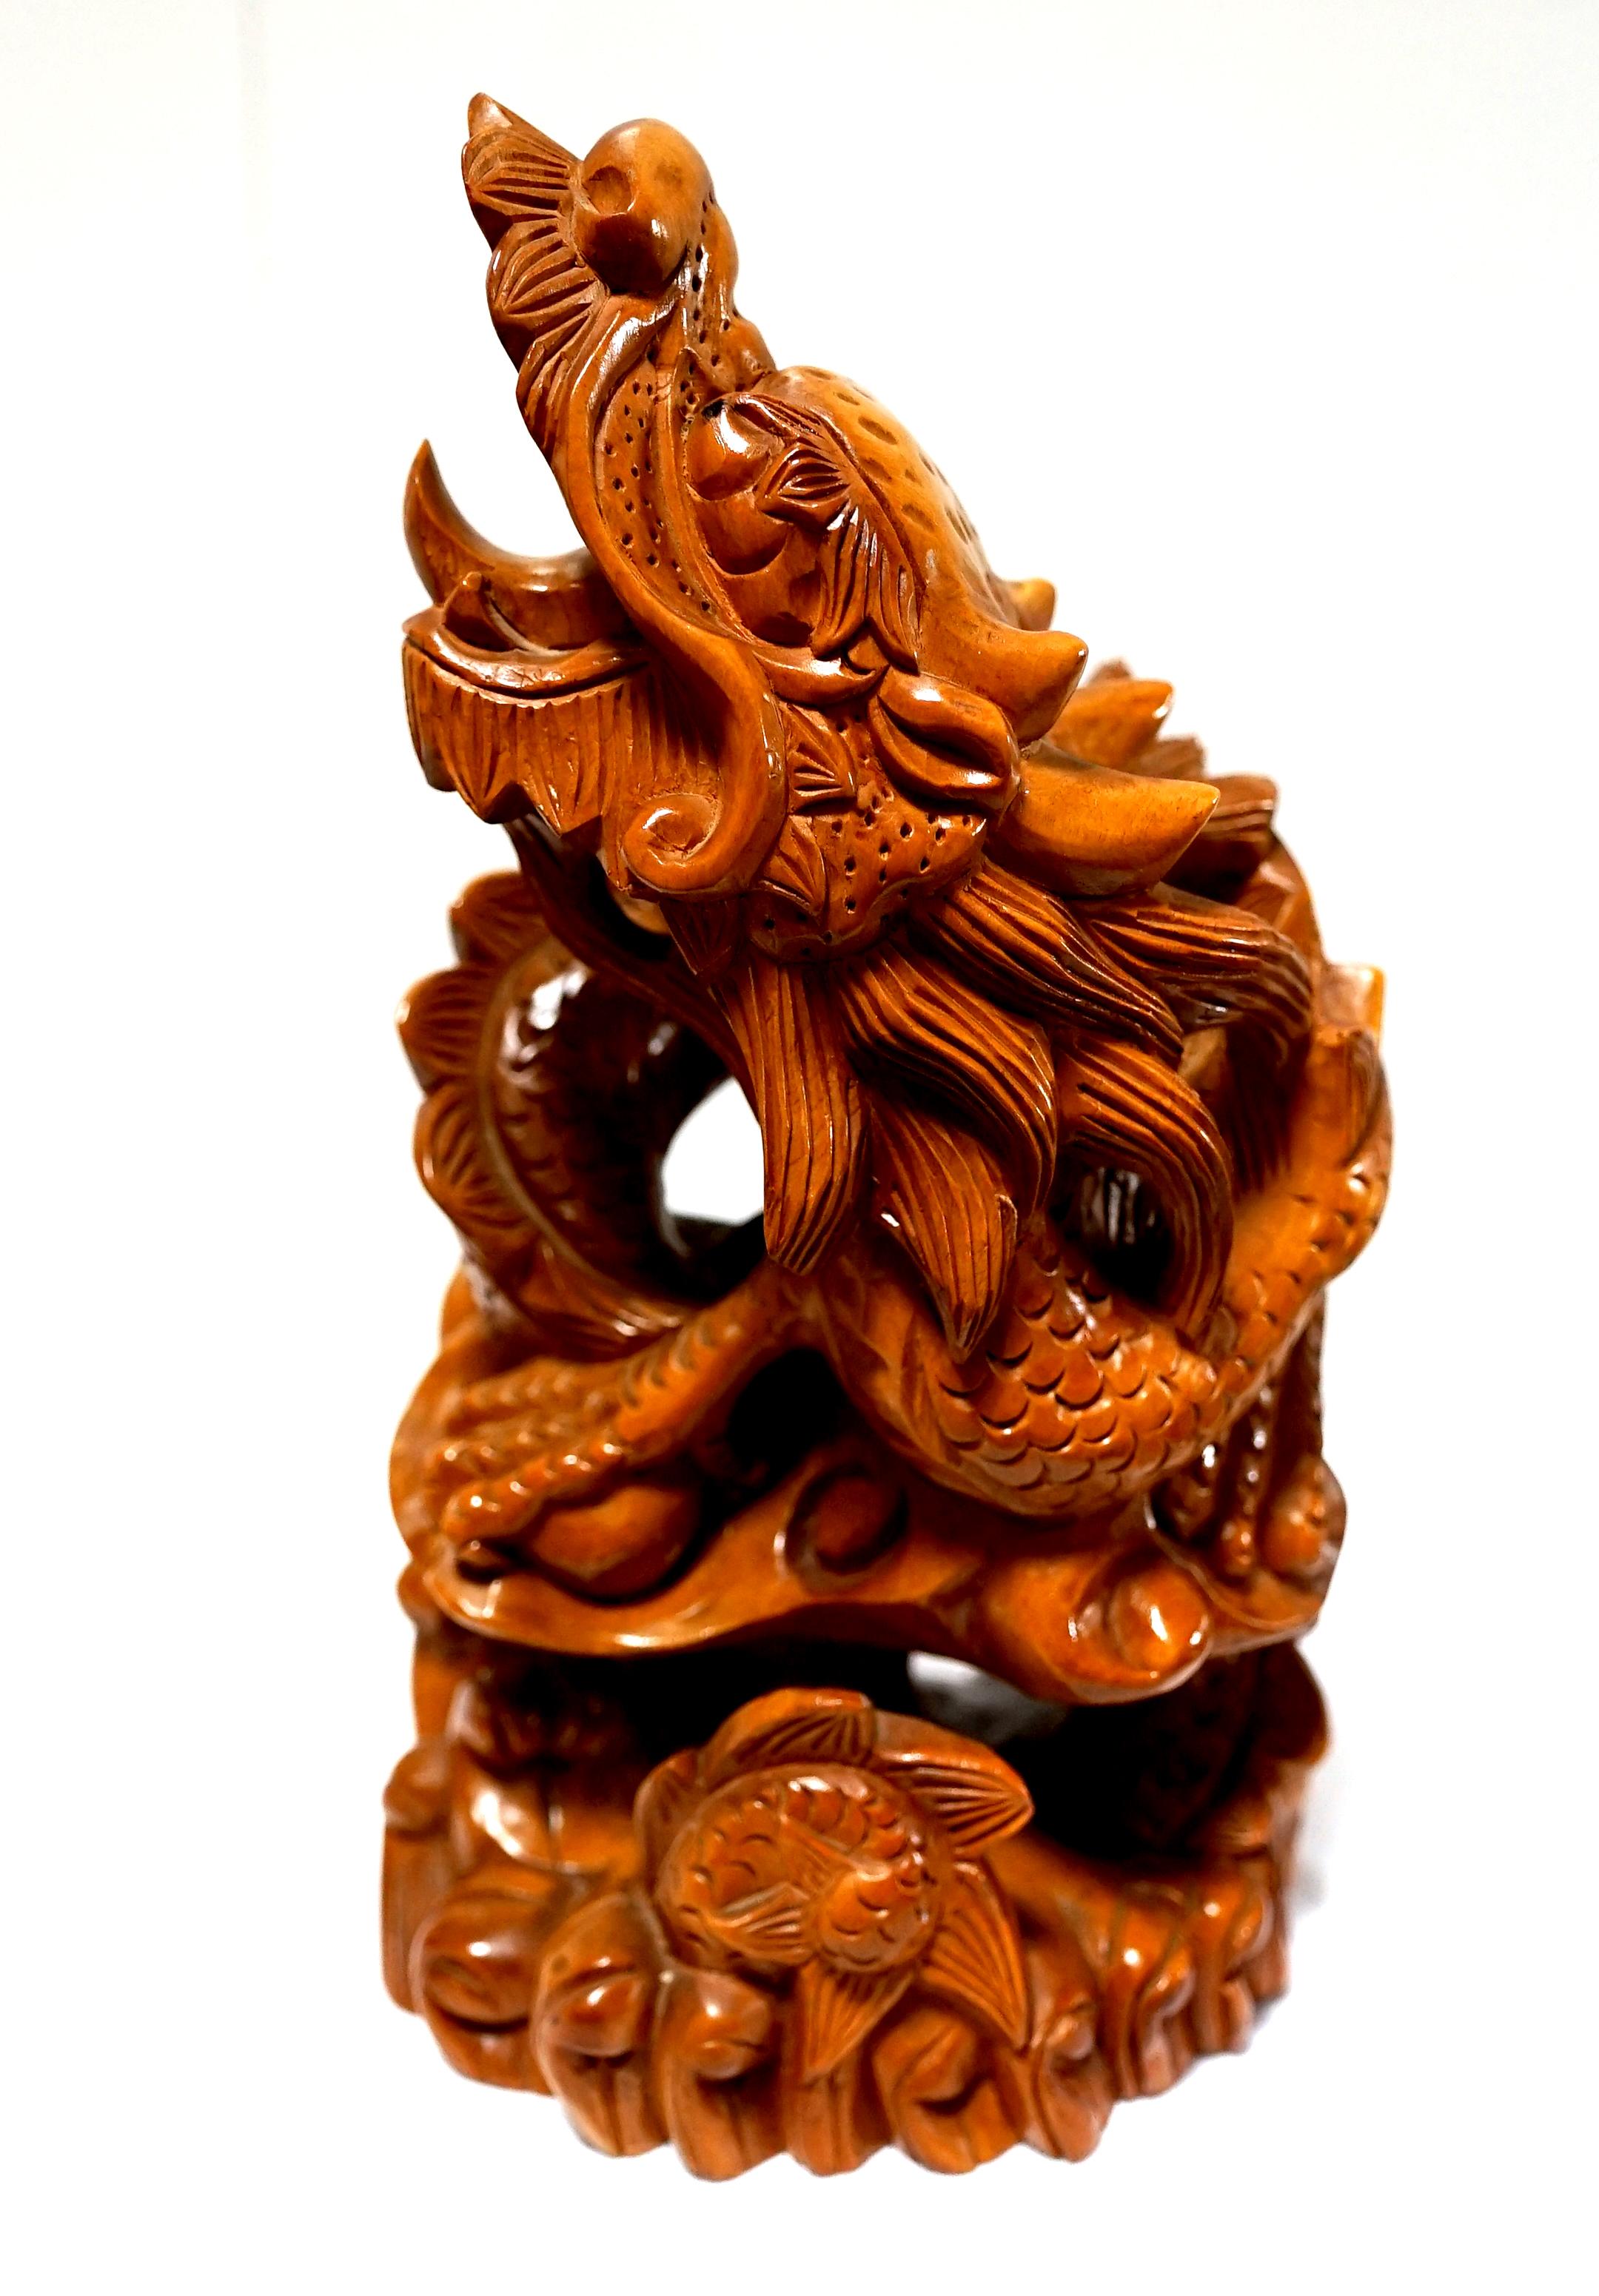 L'année du dragon met en lumière cette magnifique sculpture ancienne en bois de teck. Les détails et la patine sont étonnants. Le dragon sculpté à la main prend des allures de vie dans sa position enroulée, comme s'il était prêt à se déployer. La